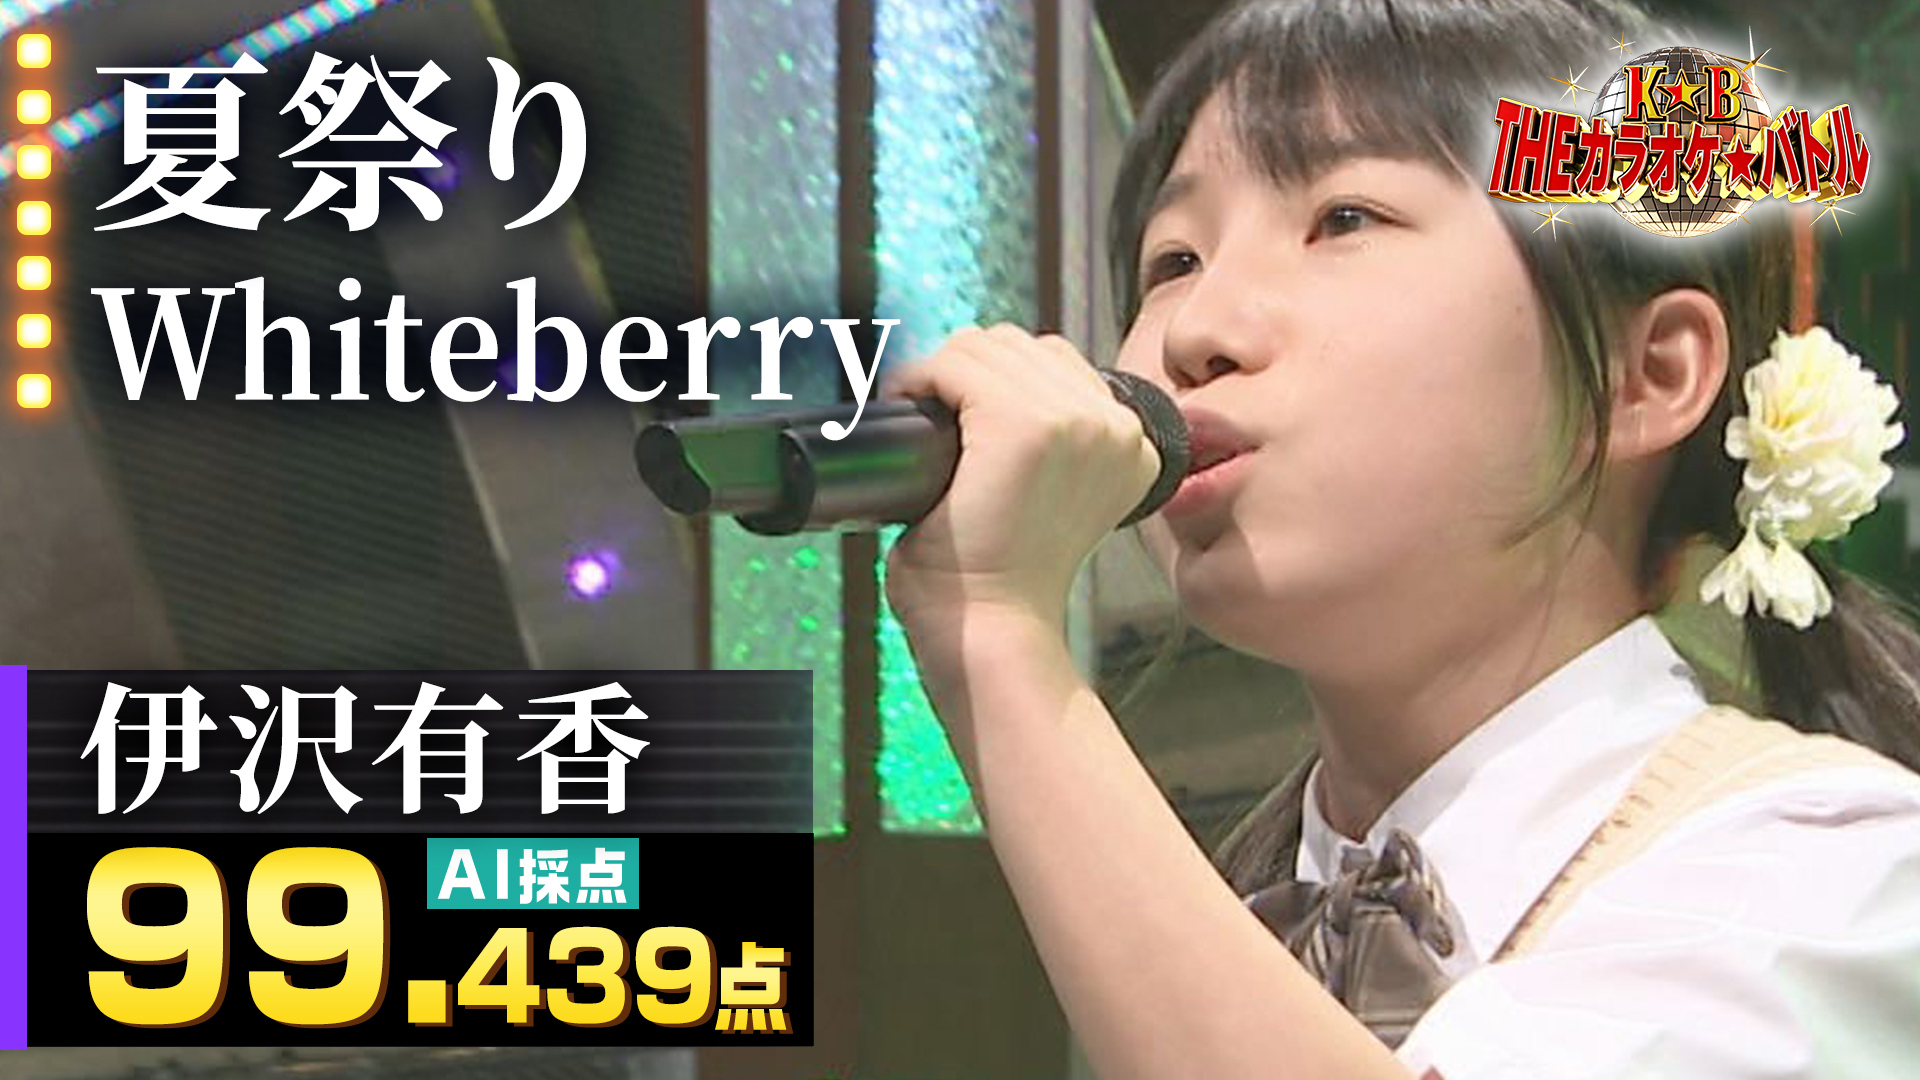 動画 伊沢有香 Whiteberry 夏祭り ｔｈｅカラオケ バトル 優勝者フルバージョン動画 21年6月日 日 ネットもテレ東